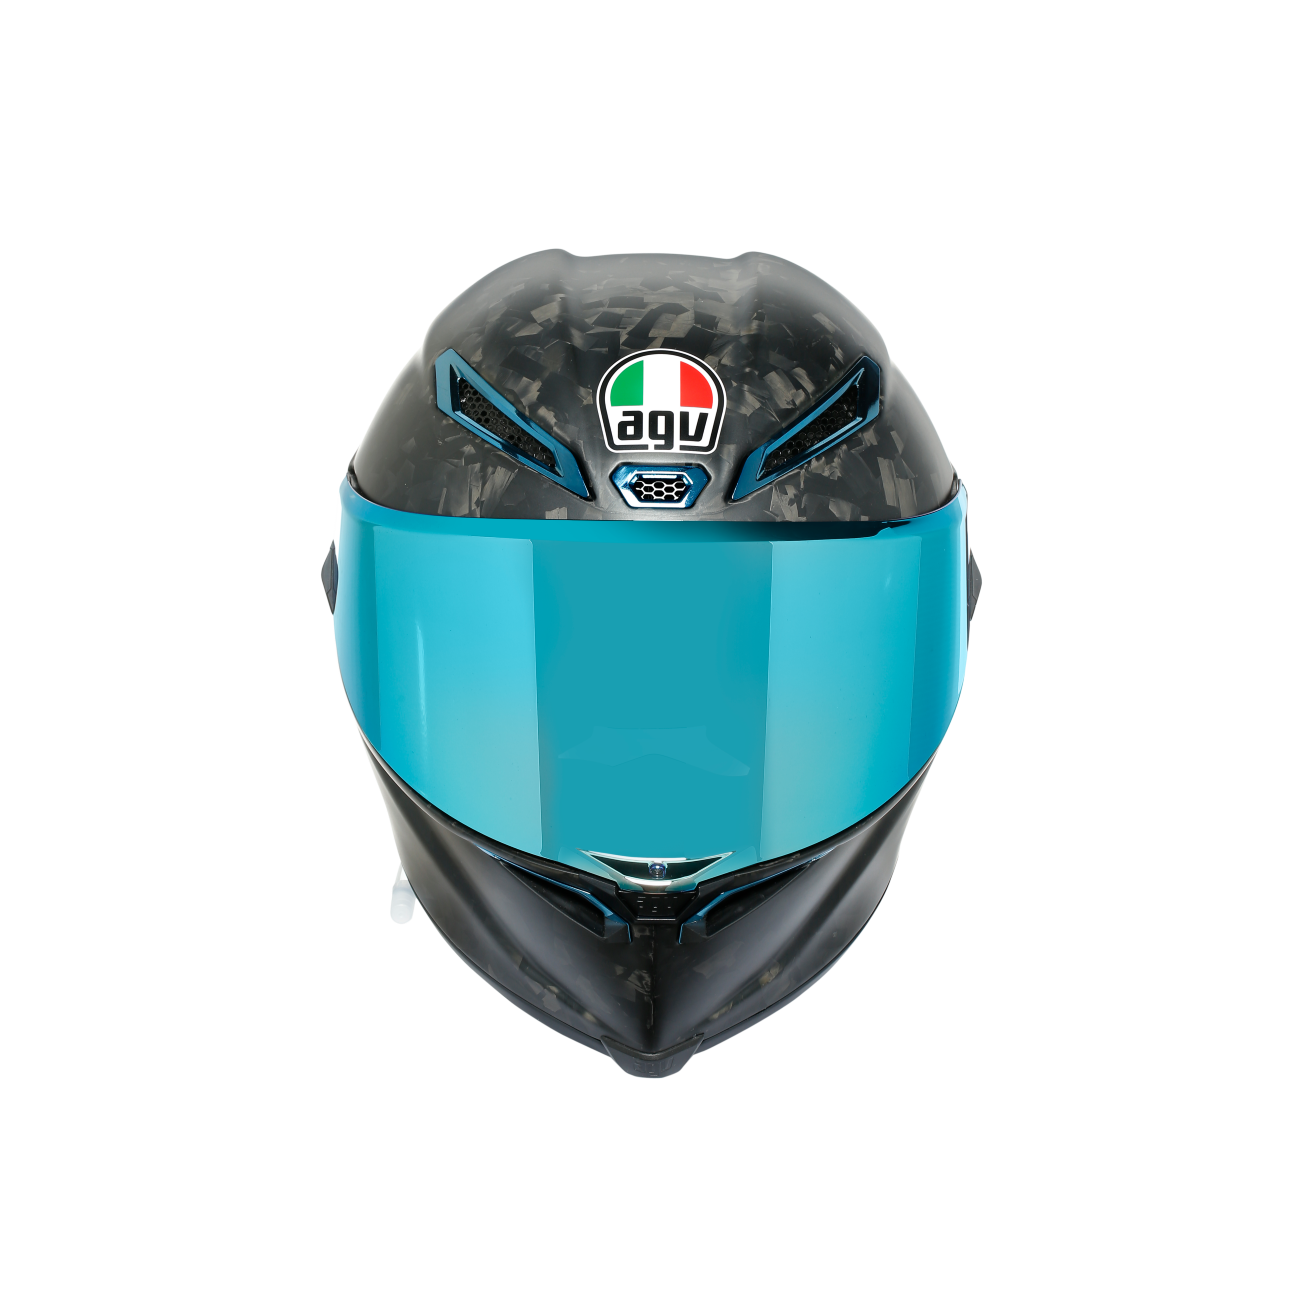 ご検討頂けますでしょうかAGV Pista GP RR Futuro Carbonio ヘルメット